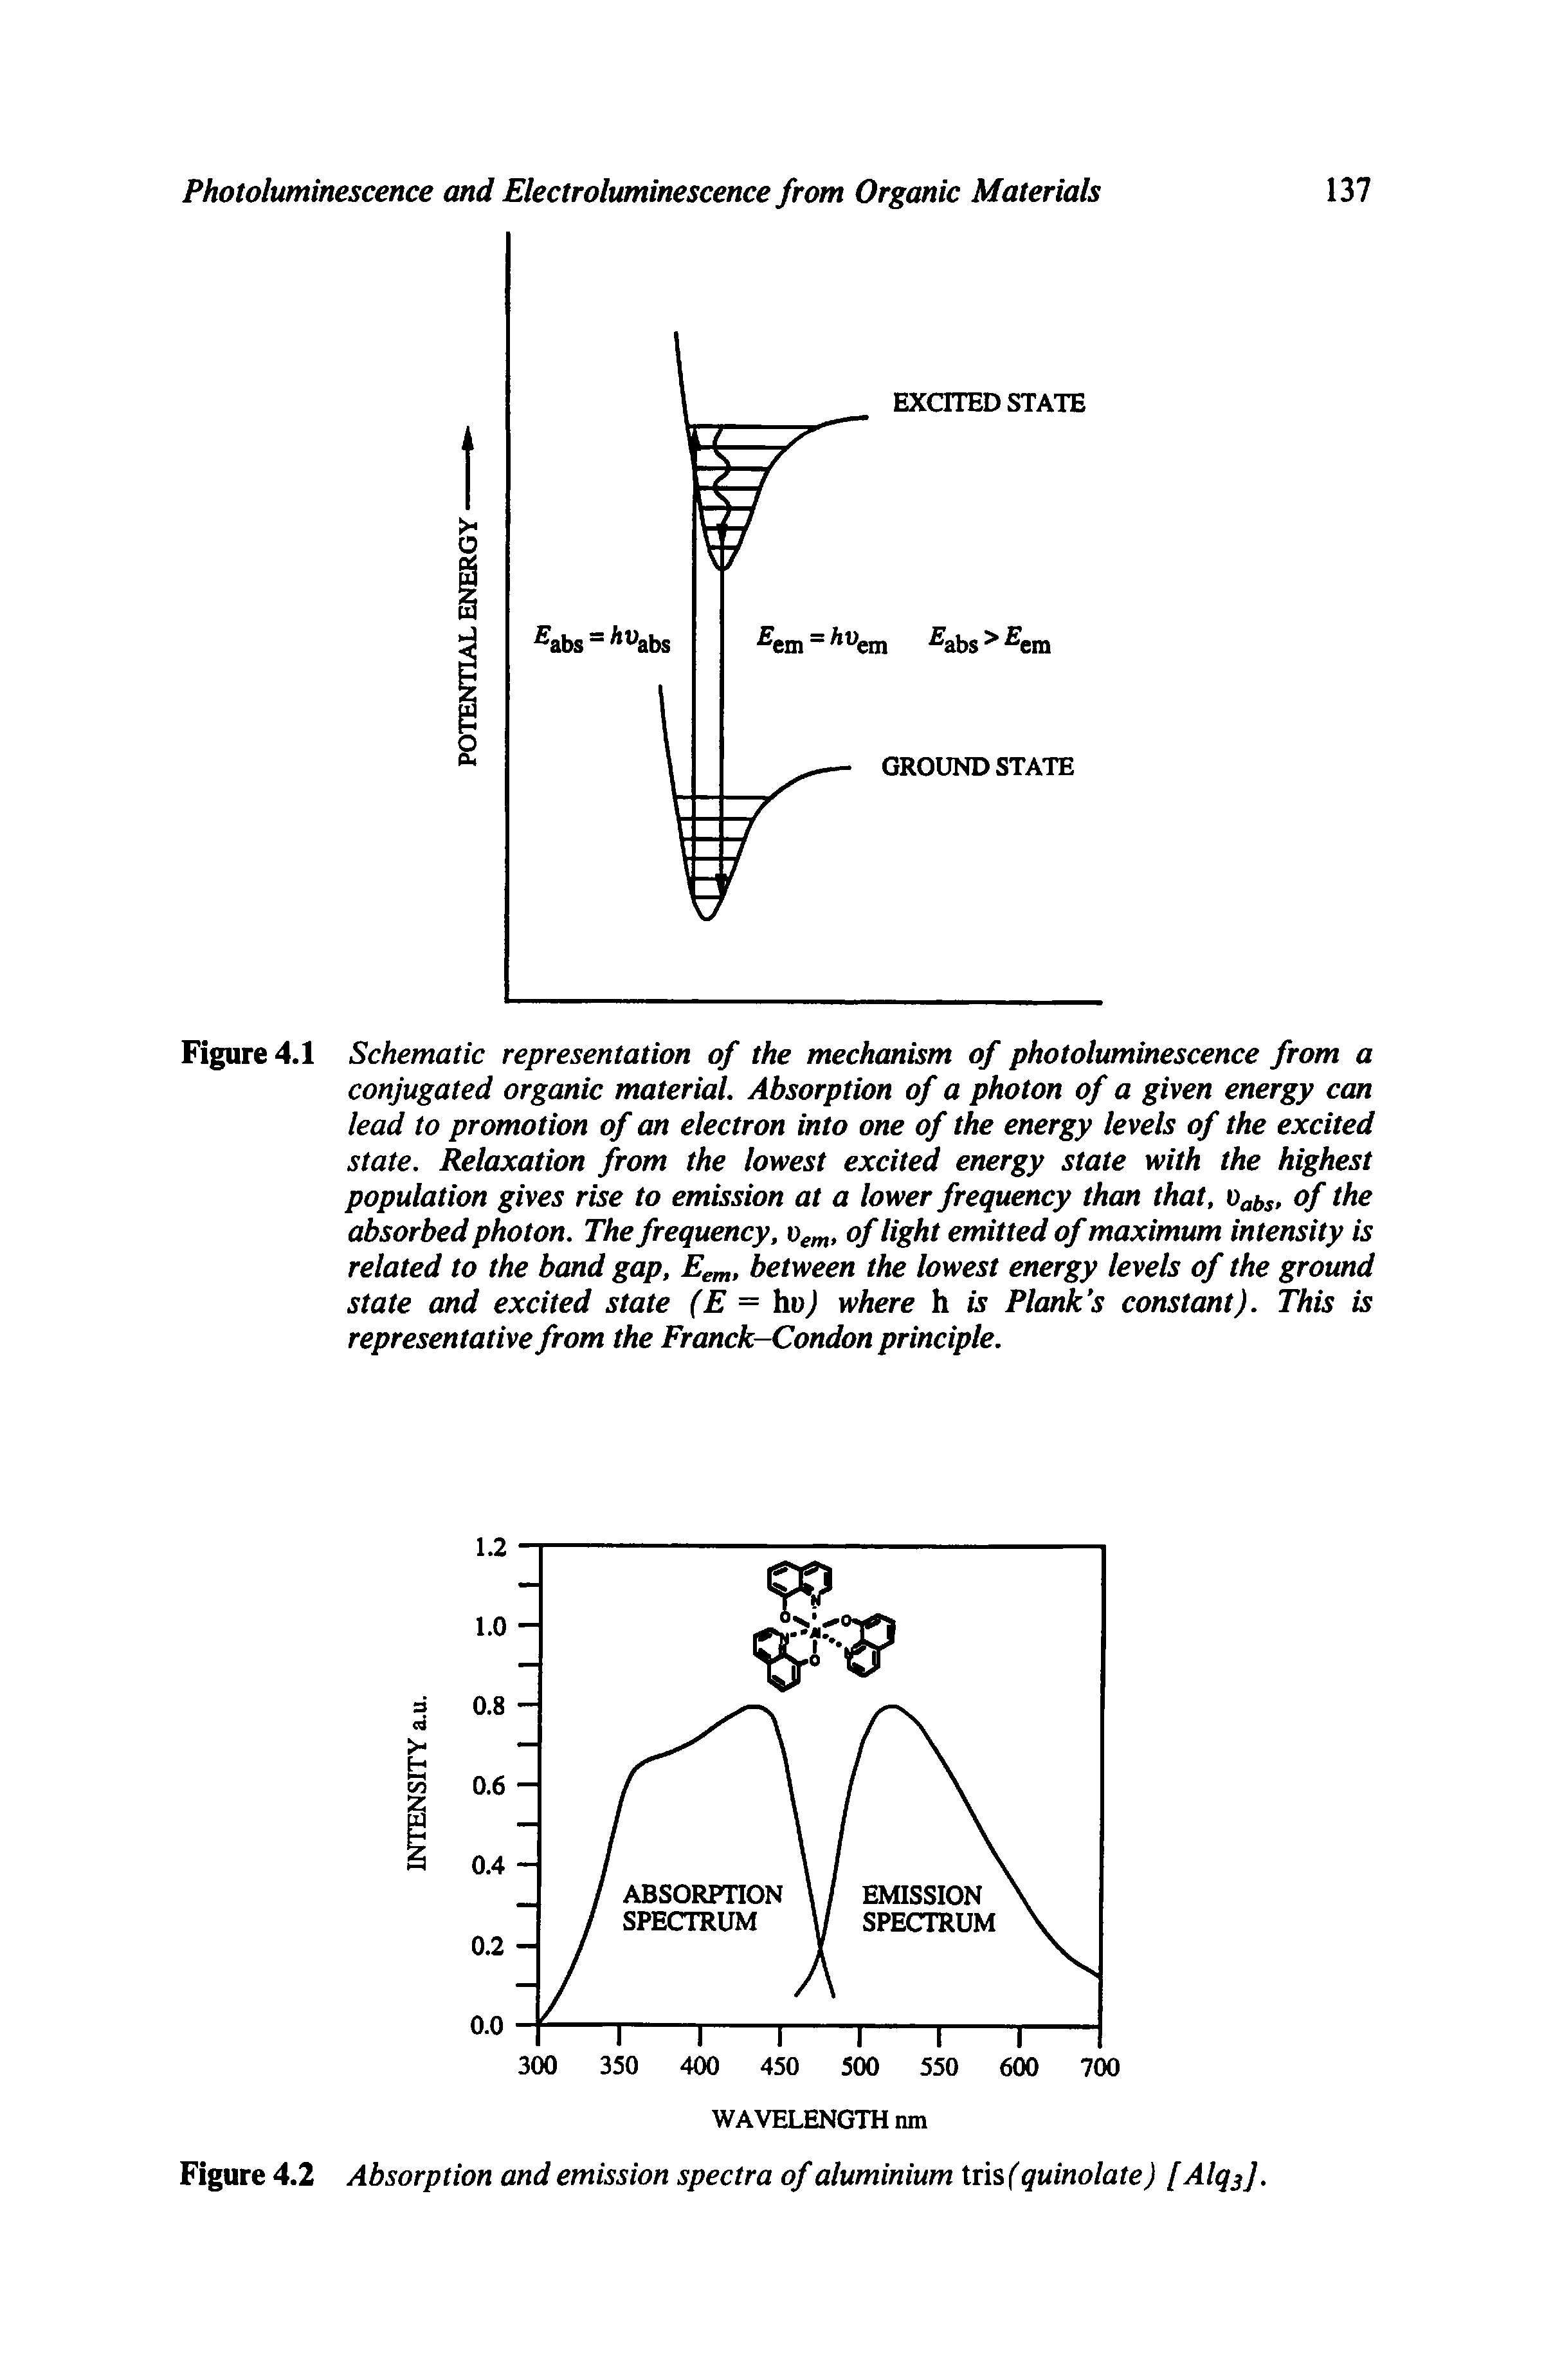 Figure 4.2 Absorption and emission spectra of aluminium tris (quinolate) [Alq j.